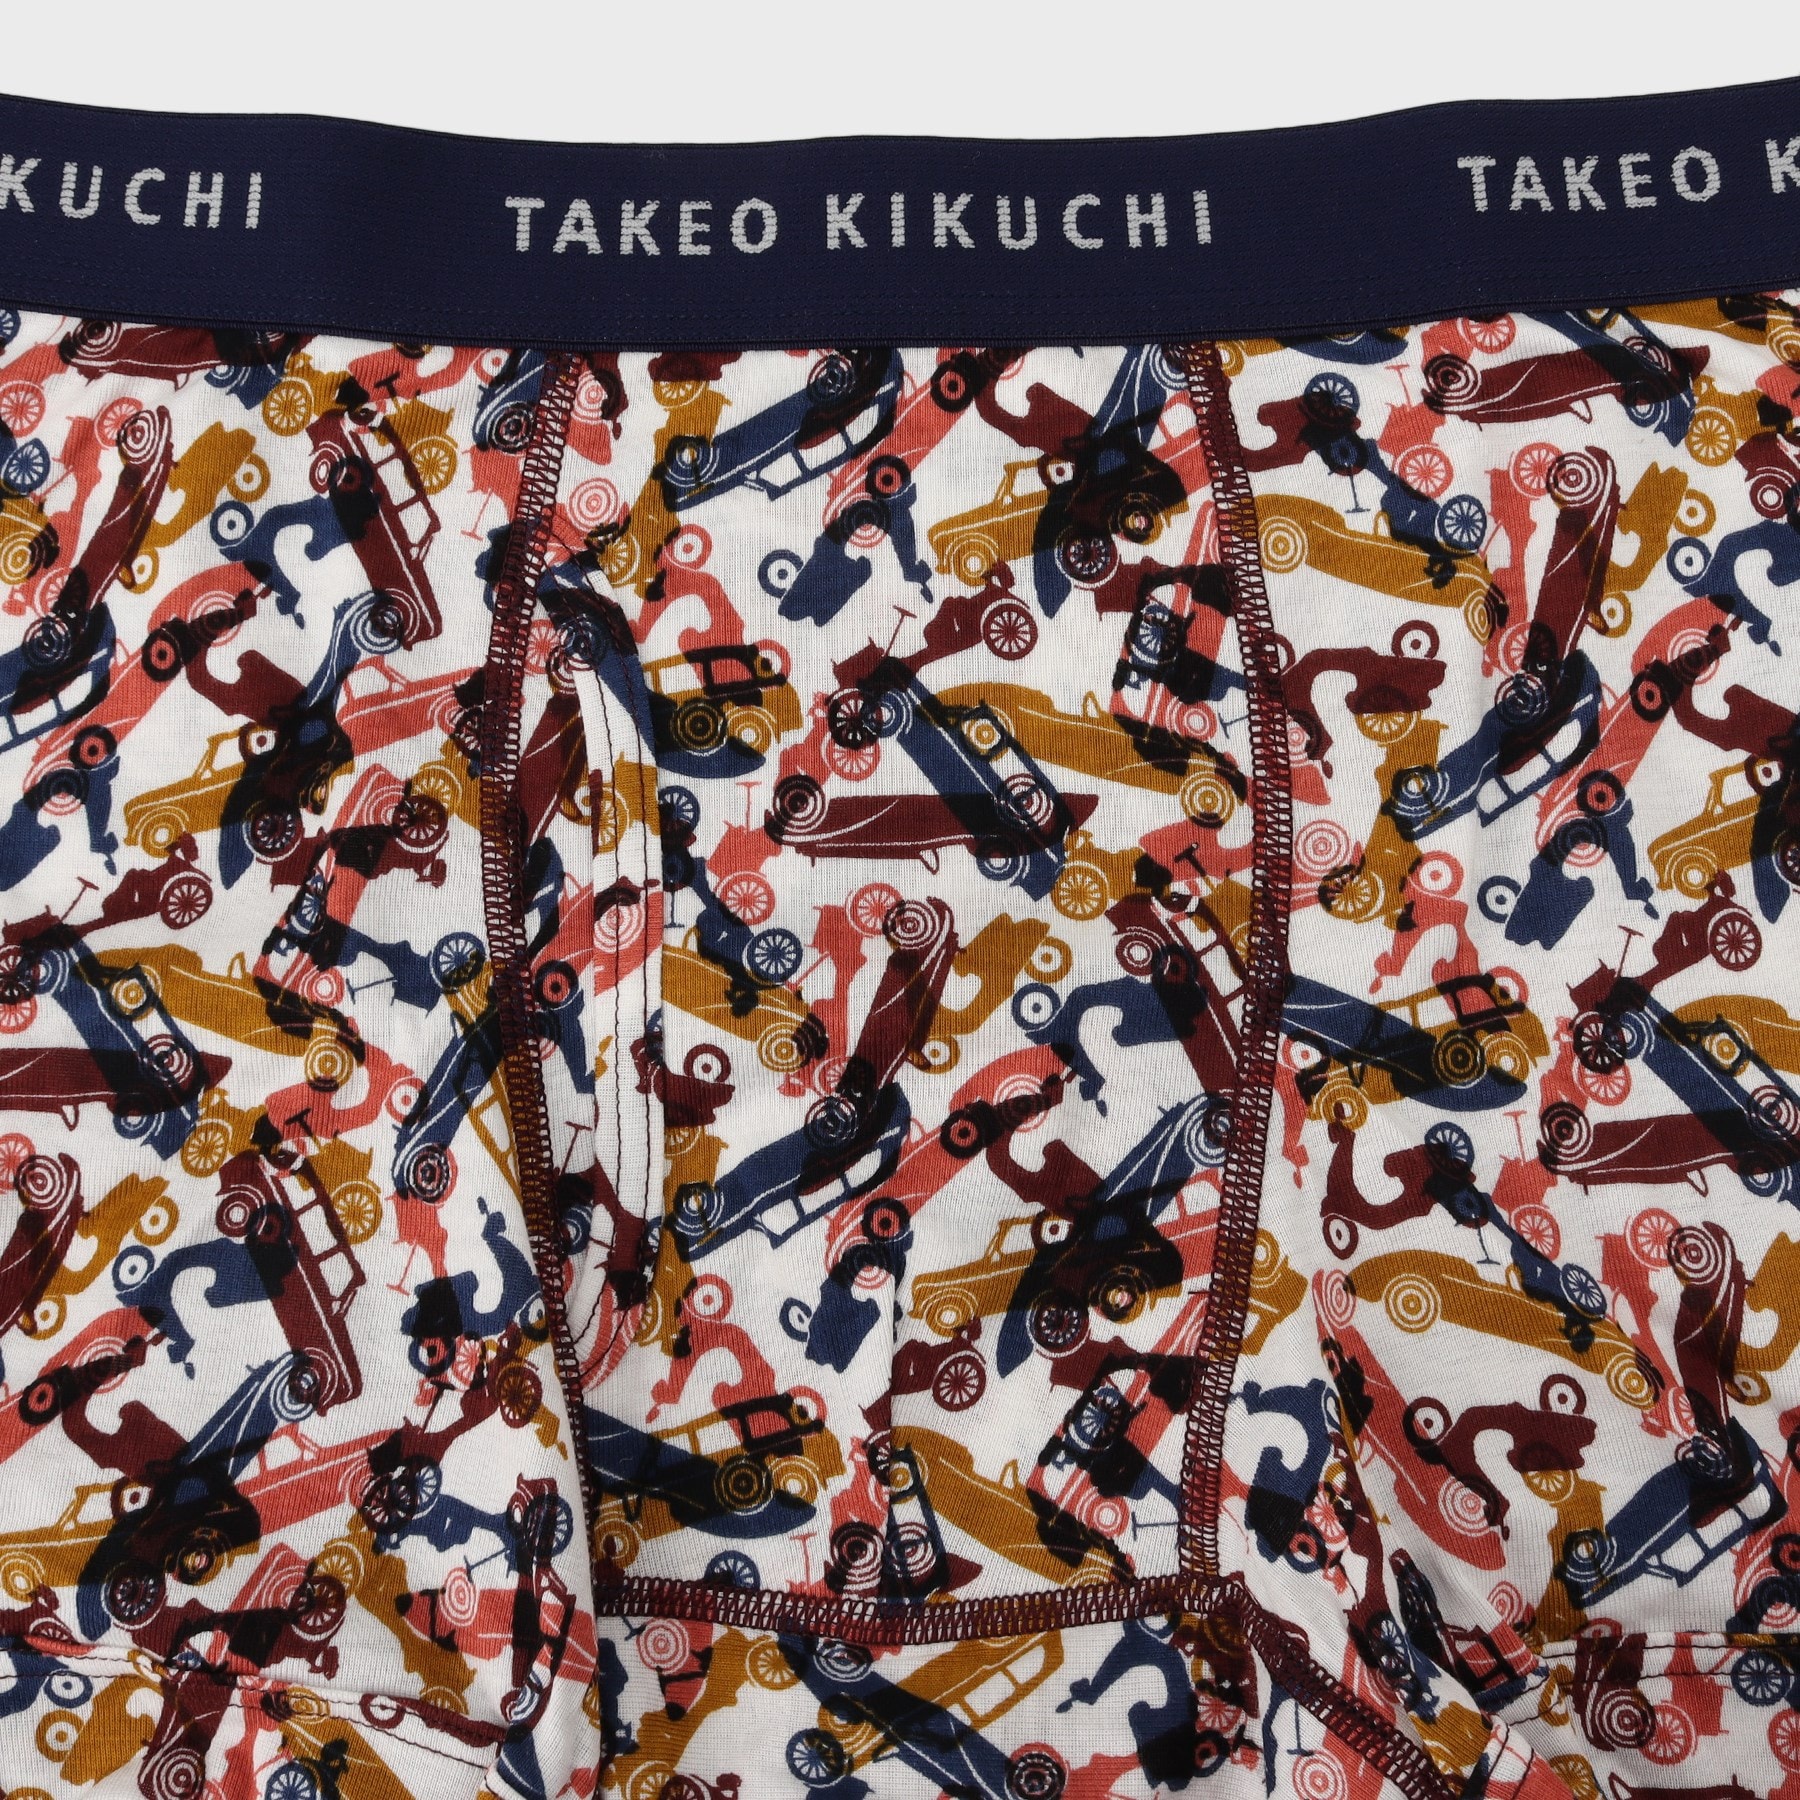 タケオキクチ(TAKEO KIKUCHI)のバイシクル柄 ボクサーパンツ3